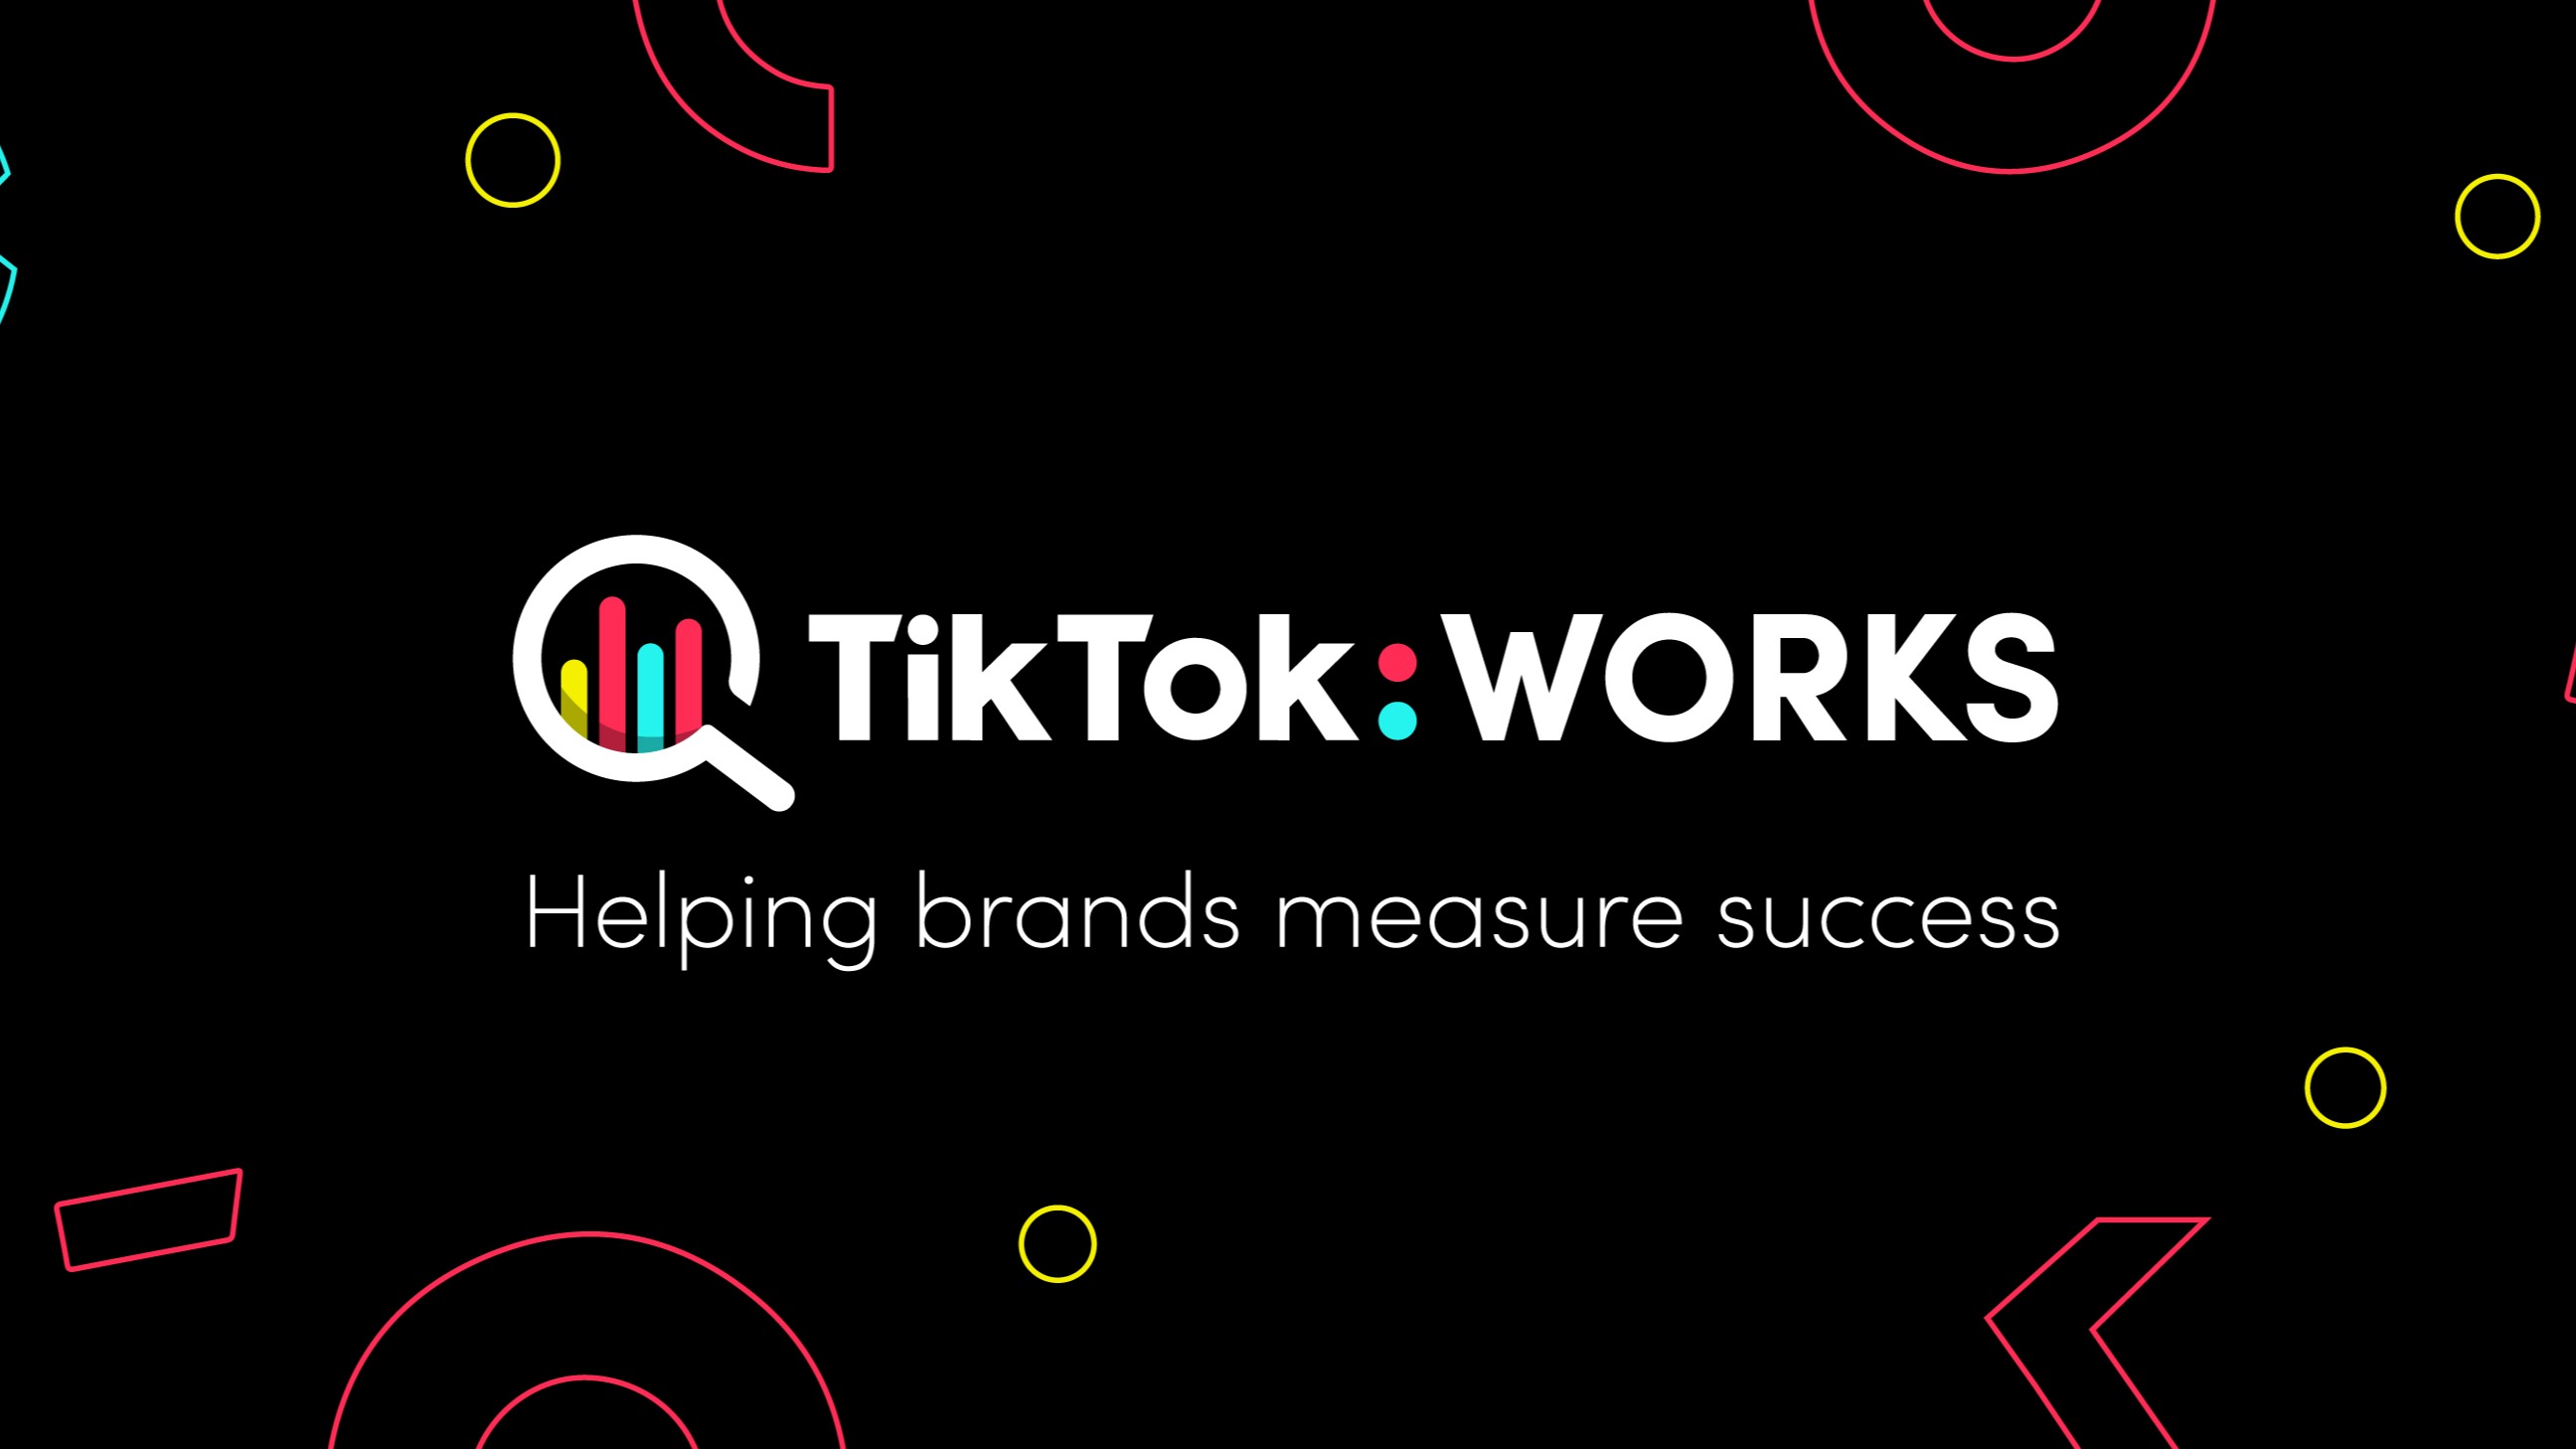 TikTok Works